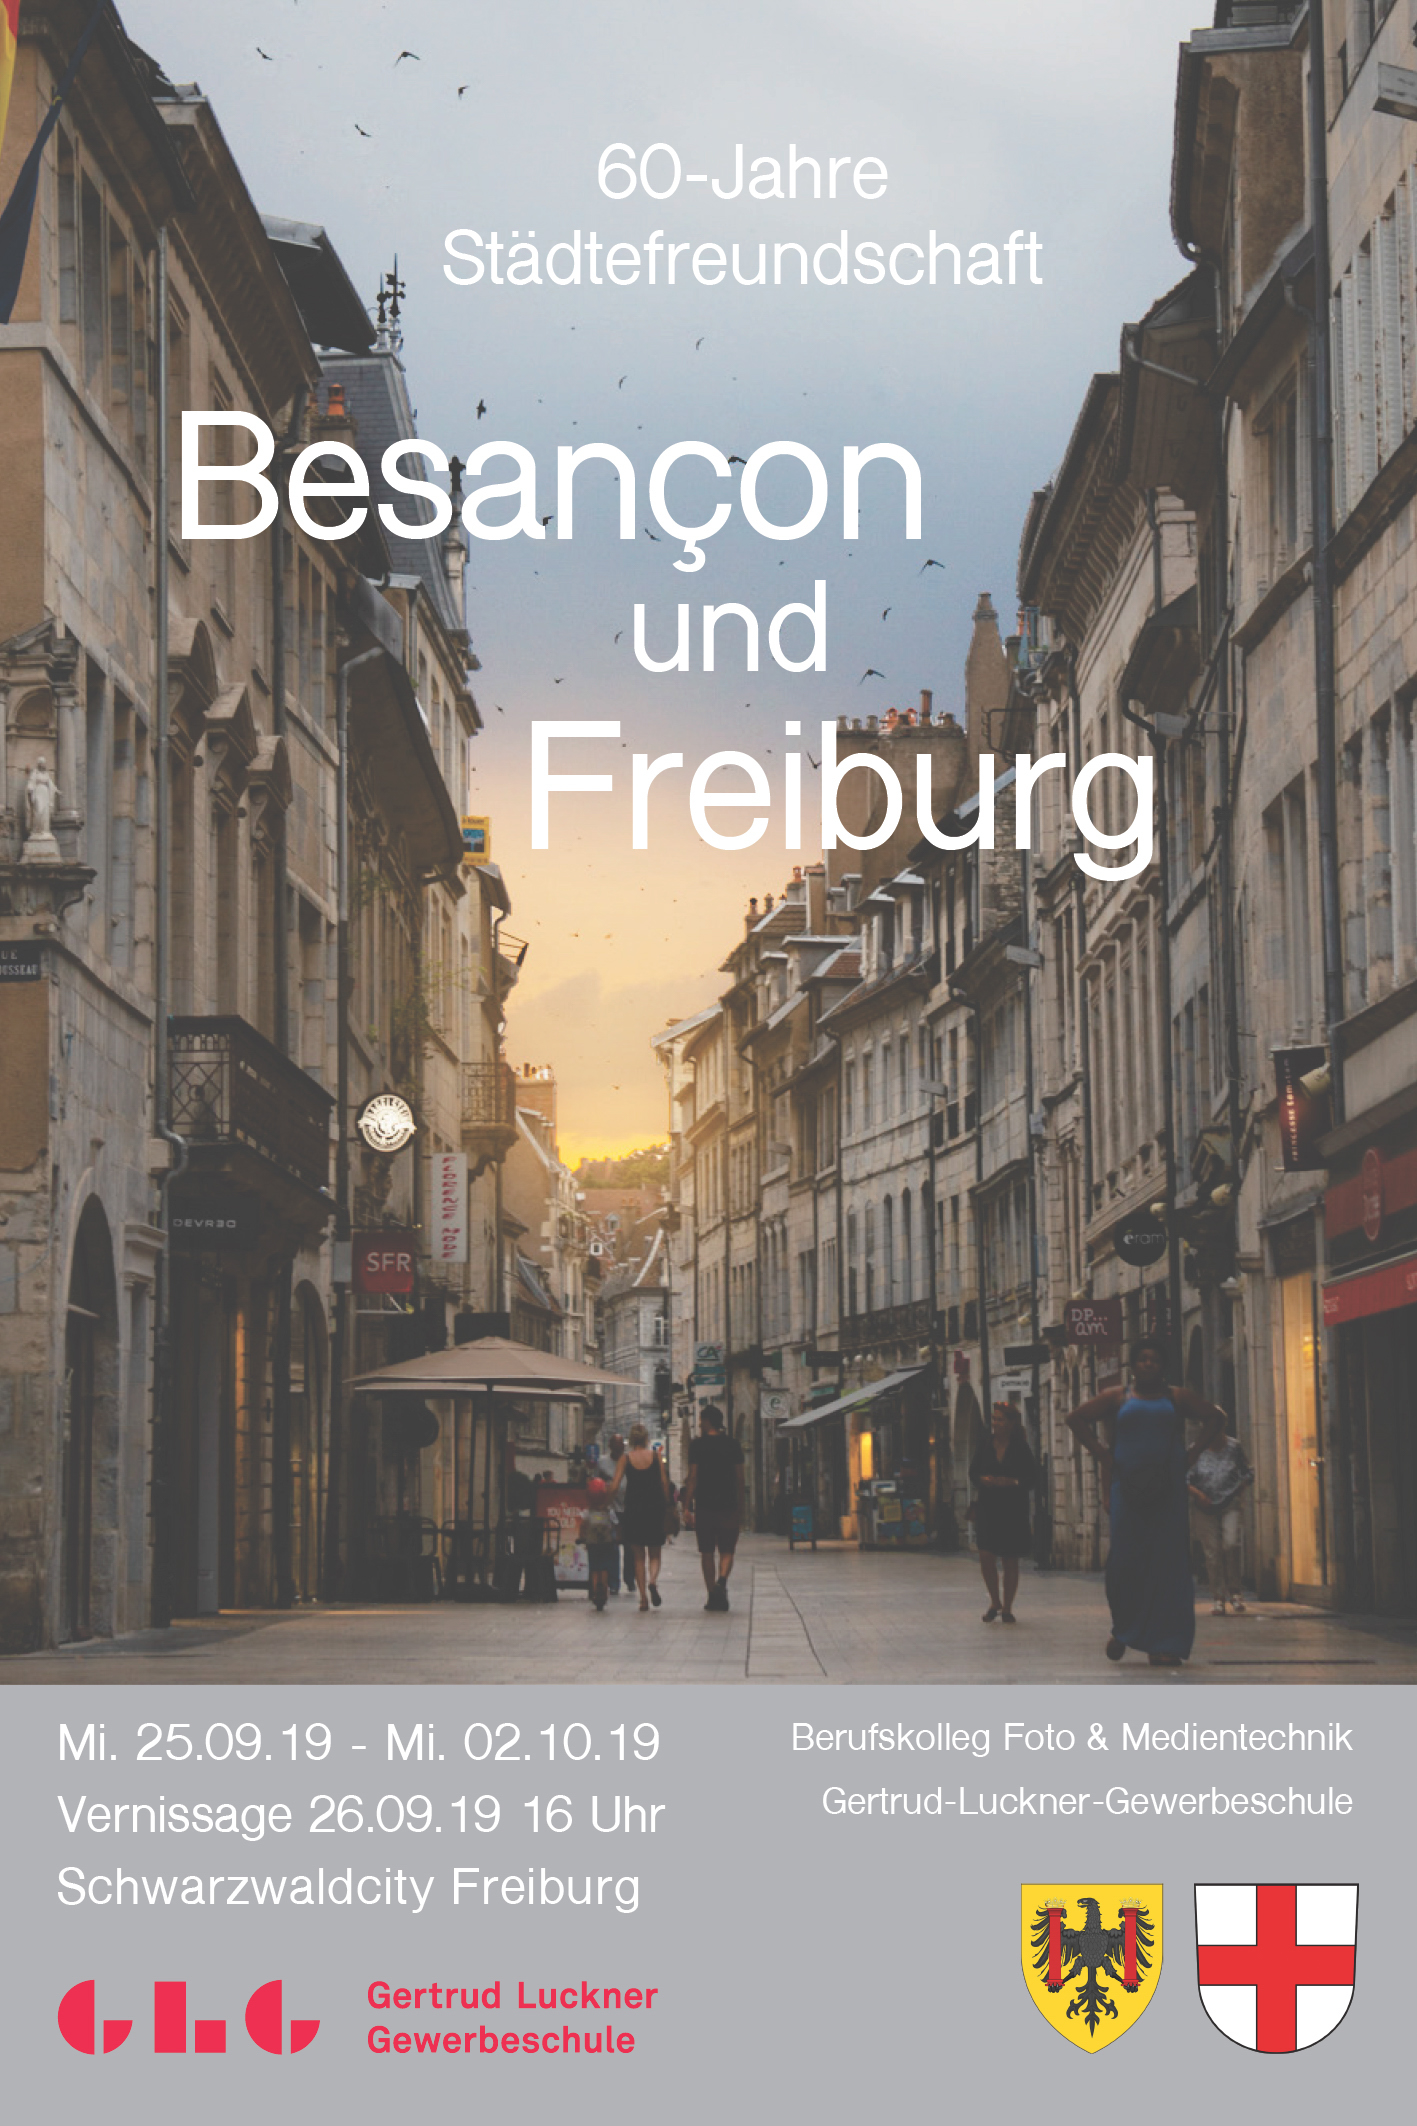 Projekt Besancon - Berufskolleg Foto-und Medientechnik